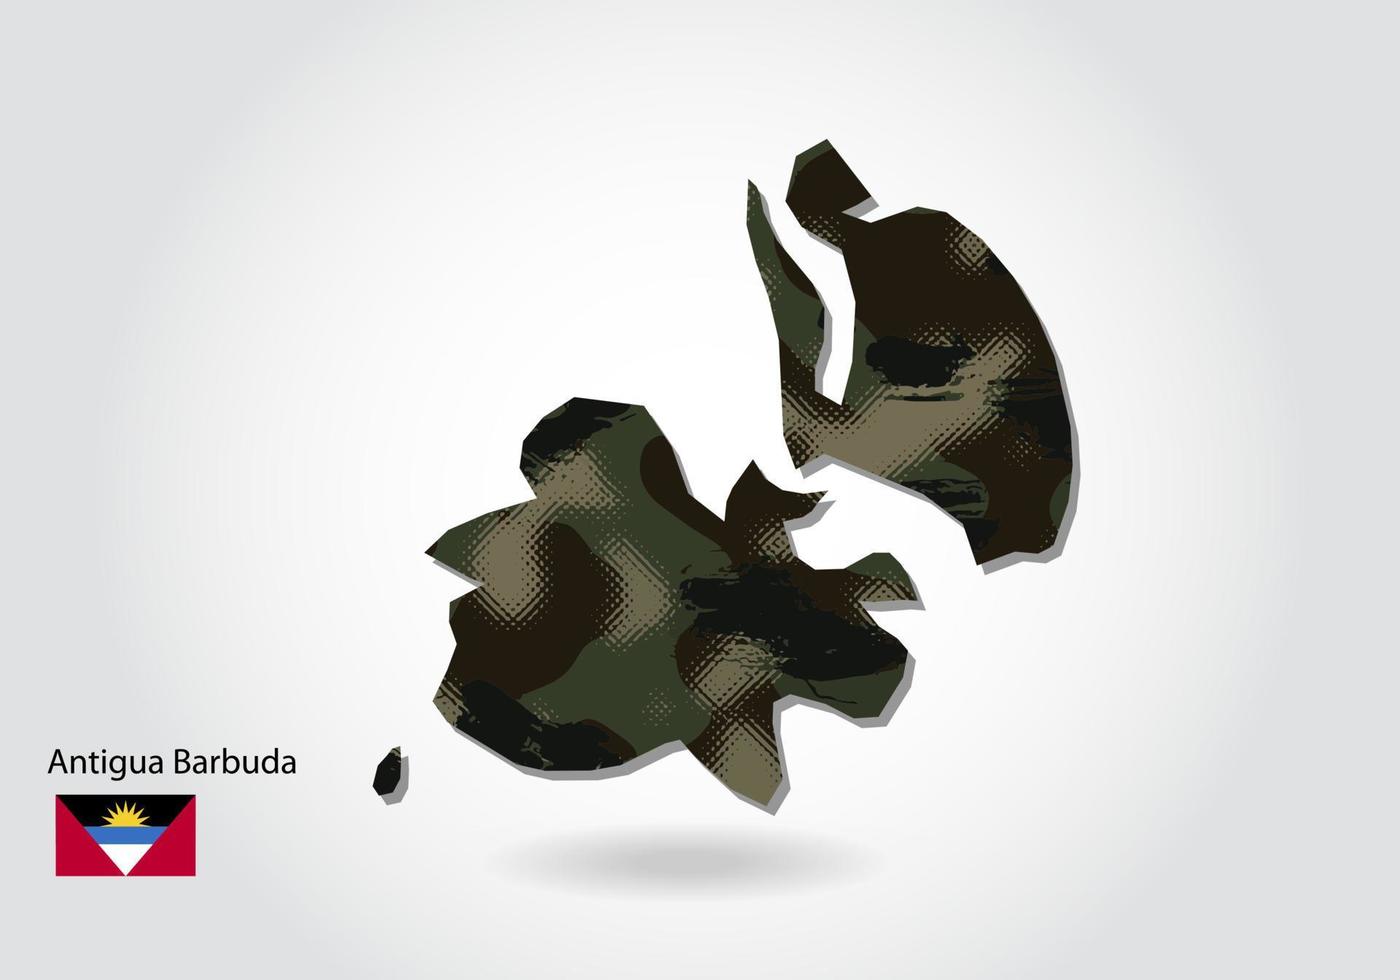 Antigua Barbuda-kaart met camouflagepatroon, bosgroene textuur in kaart. militair concept voor leger, soldaat en oorlog. wapenschild, vlag. vector